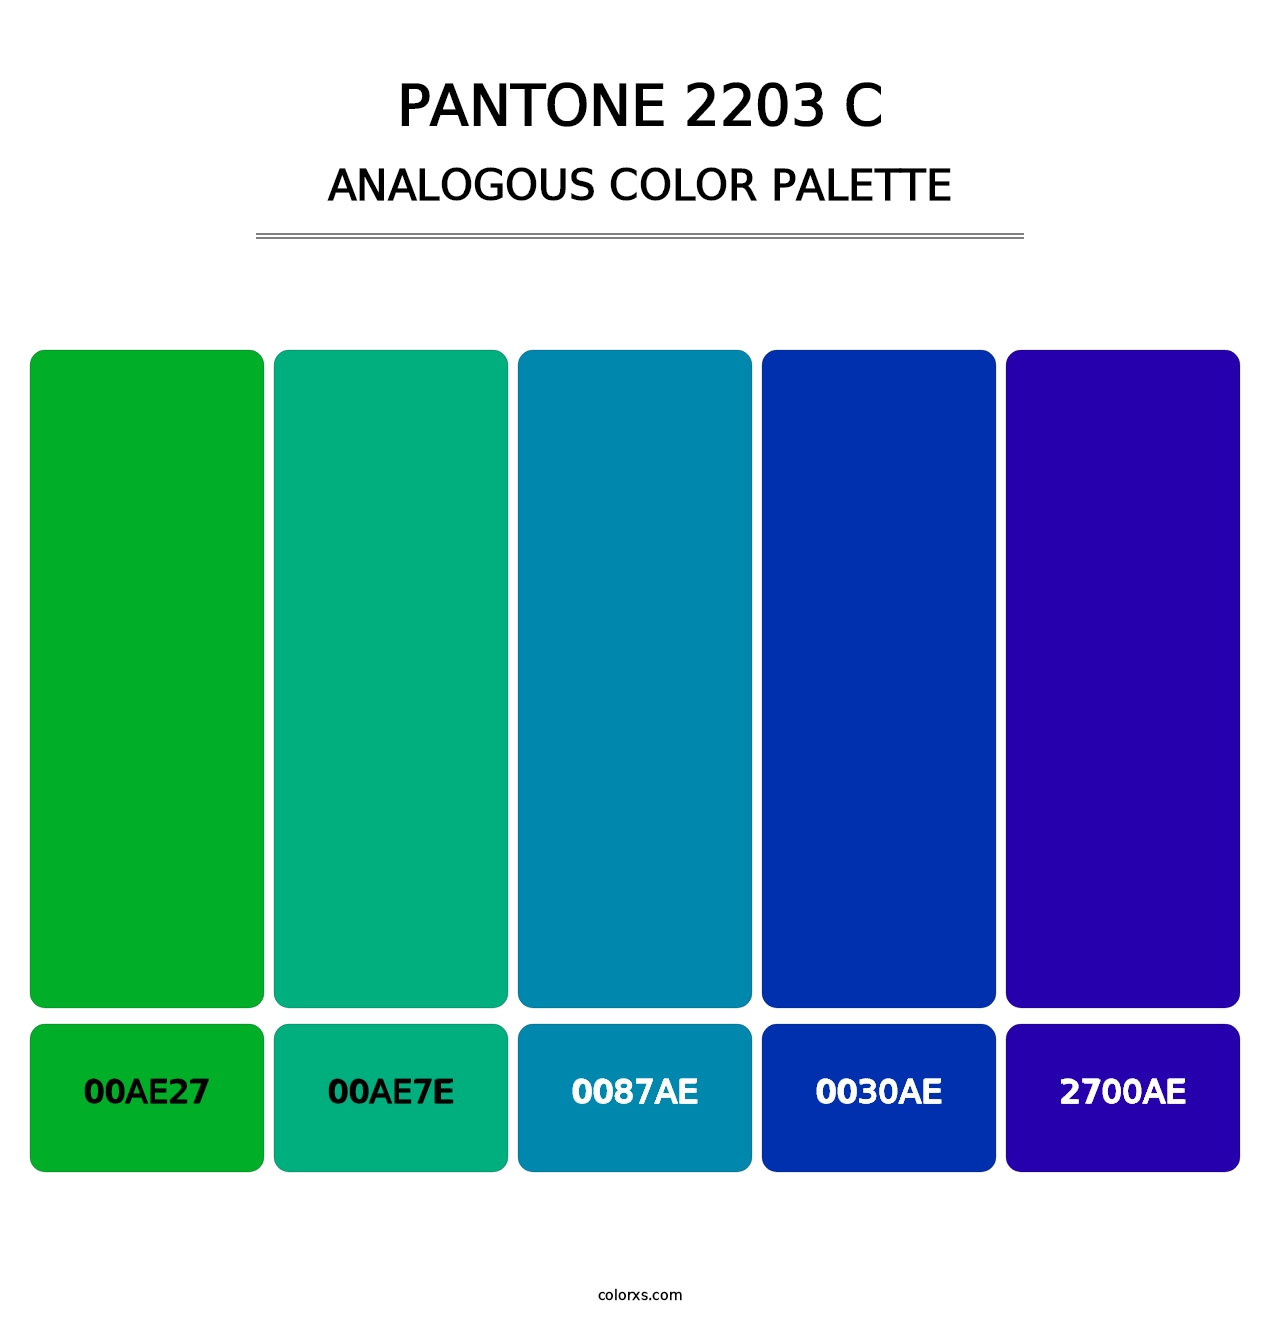 PANTONE 2203 C - Analogous Color Palette